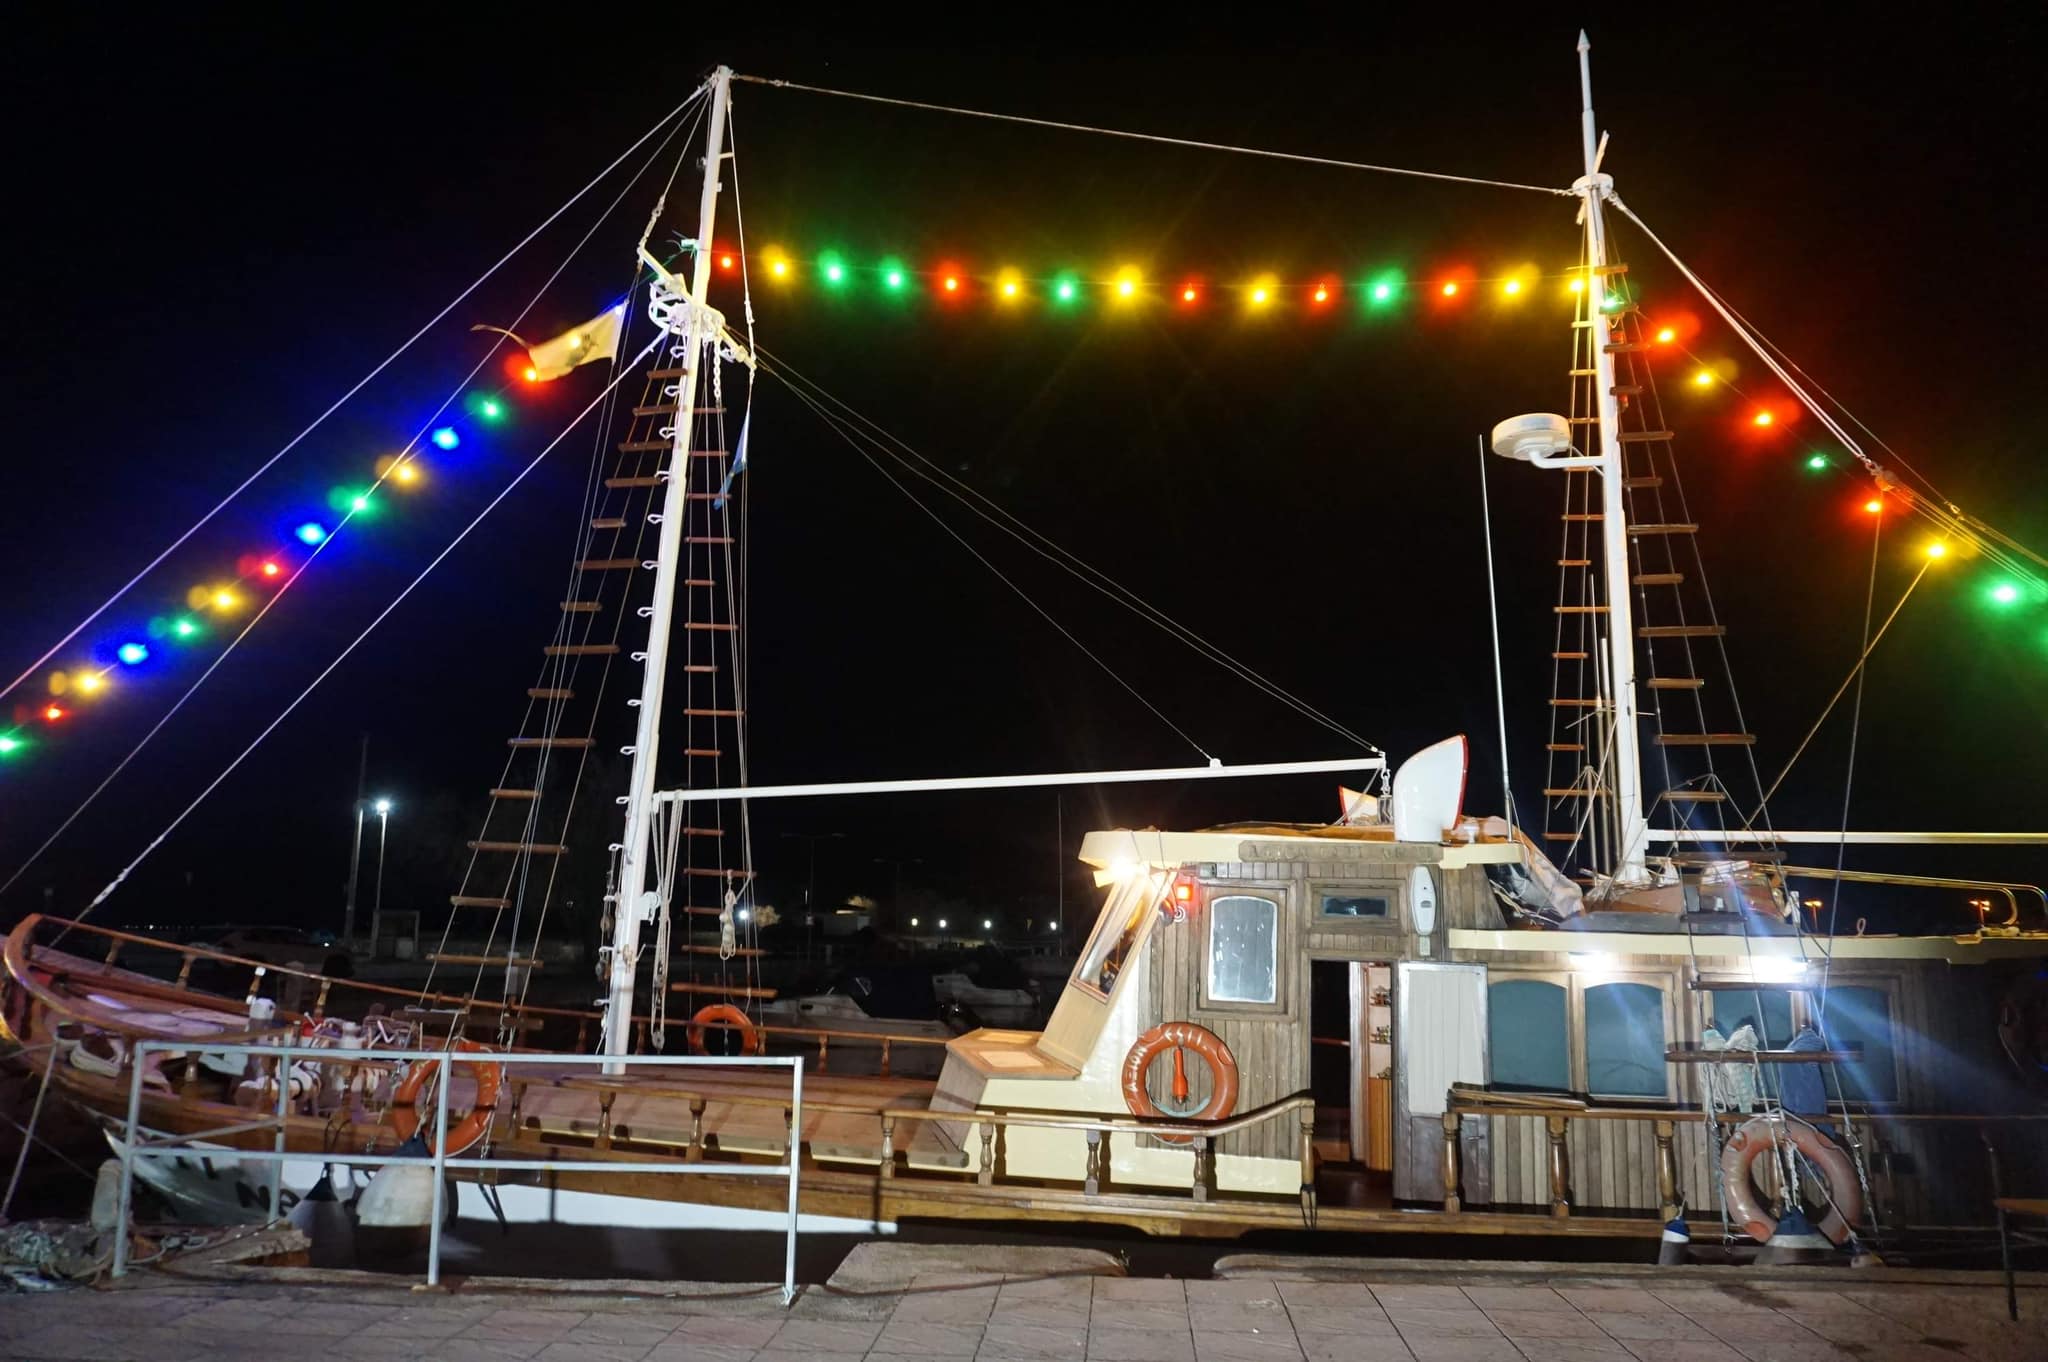 Άναψαν τα Χριστουγεννιάτικα φώτα στο σκάφος “Άξιον Εστί” στο Φανάρι Ροδόπης-Από το επίνειο της Κομοτηνής   ξεκίνησε η εορταστική φωταγώγηση